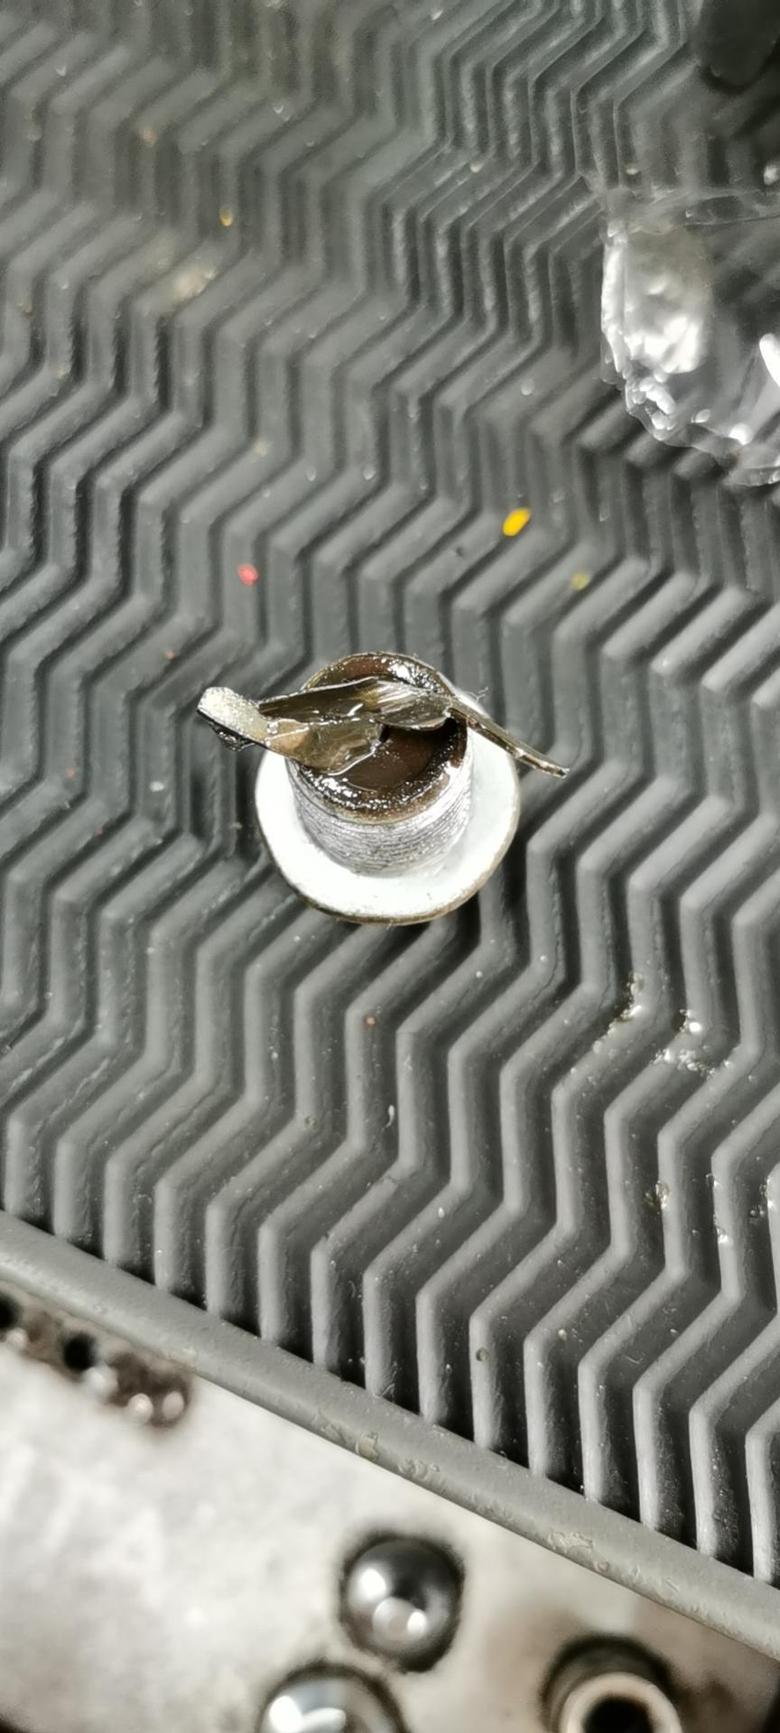 换变速箱油的时候发现螺丝上有金属碎屑，车子目前没有感觉有异常，这有可能是什么结构上的碎屑呢，严不严重。车辆是江淮瑞风S3，16款手动豪华型。